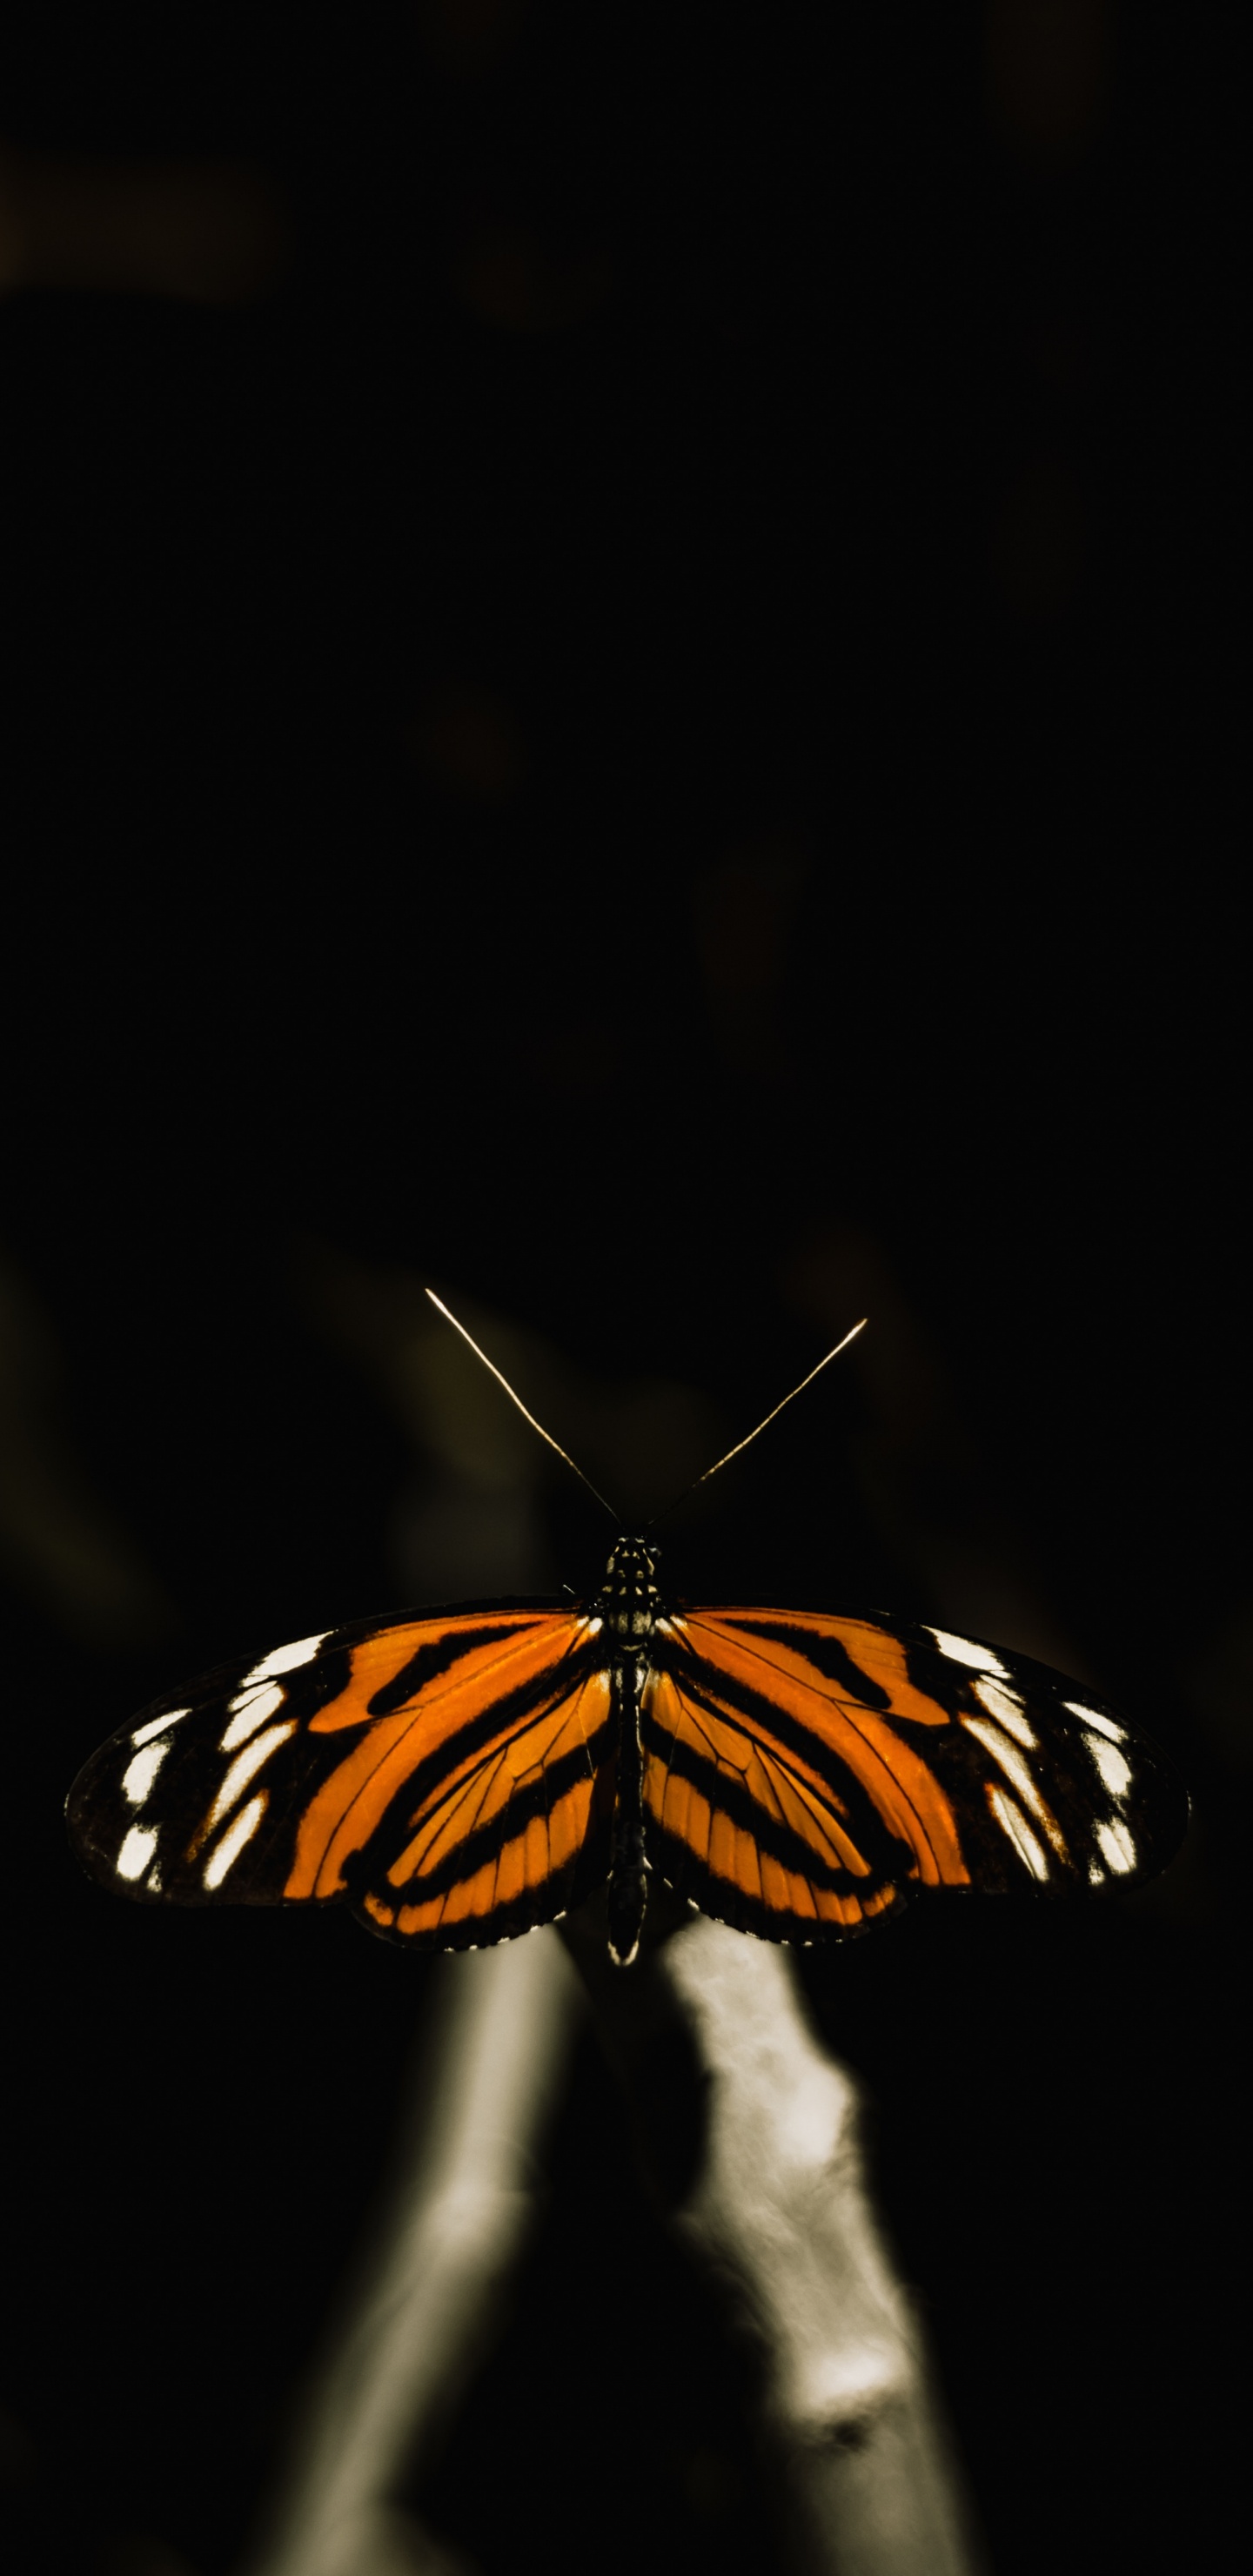 Schwarz-weißer Schmetterling Auf Schwarzem Hintergrund. Wallpaper in 1440x2960 Resolution